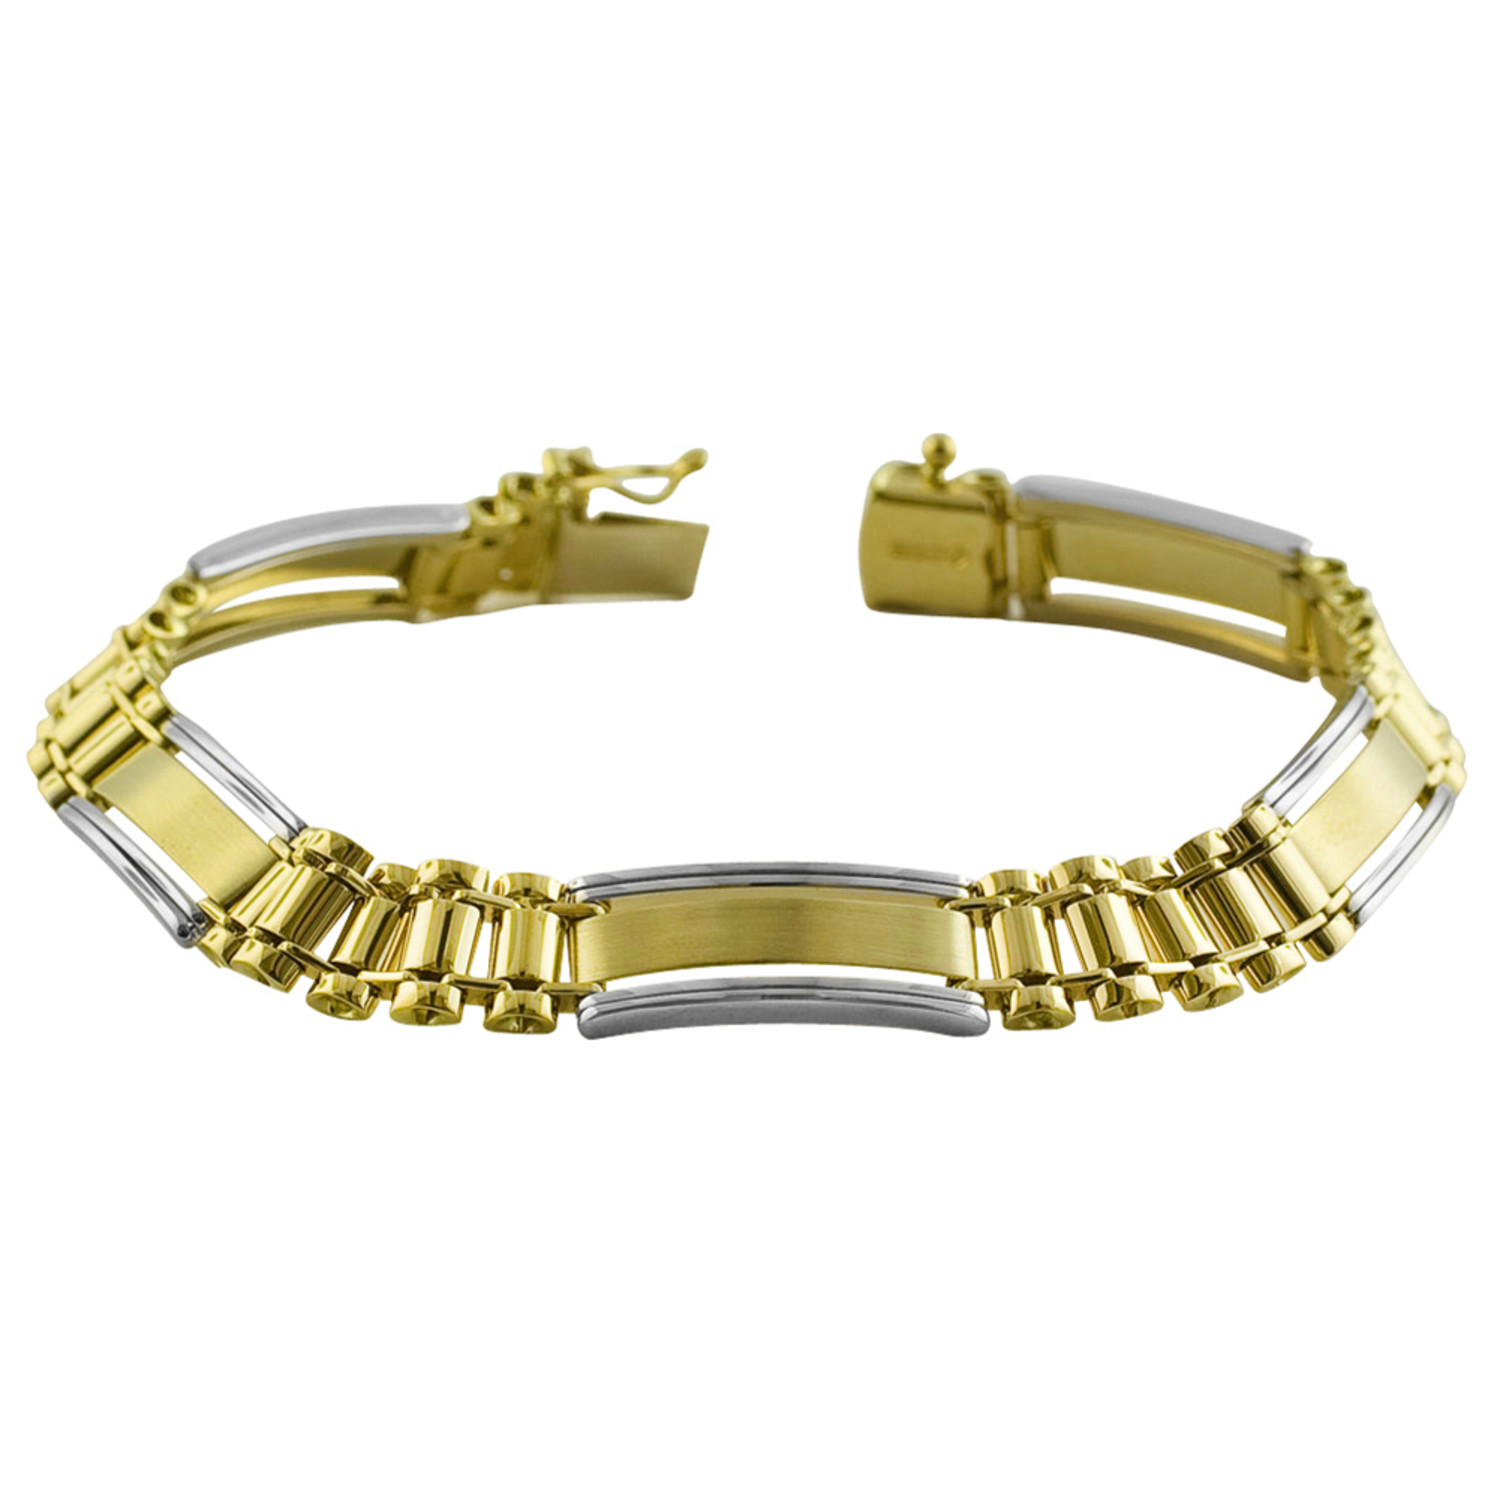 Solid 14K Gold Two-Tone Men's Designer Bracelet // 8mm - Novell Group ...